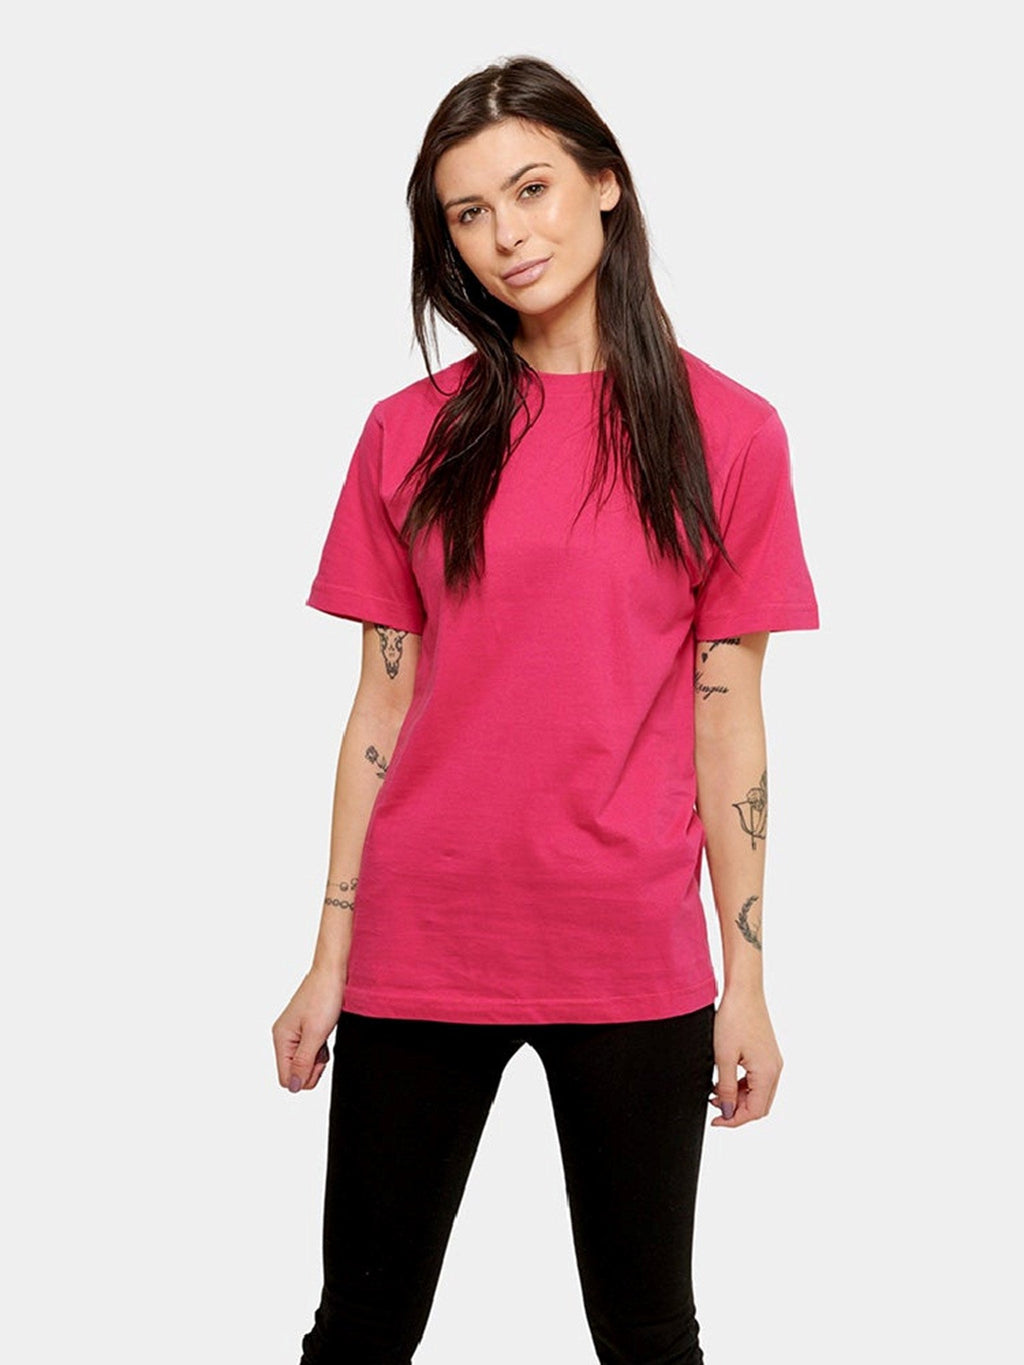 Υπερμεγέθη μπλουζάκι - ροζ